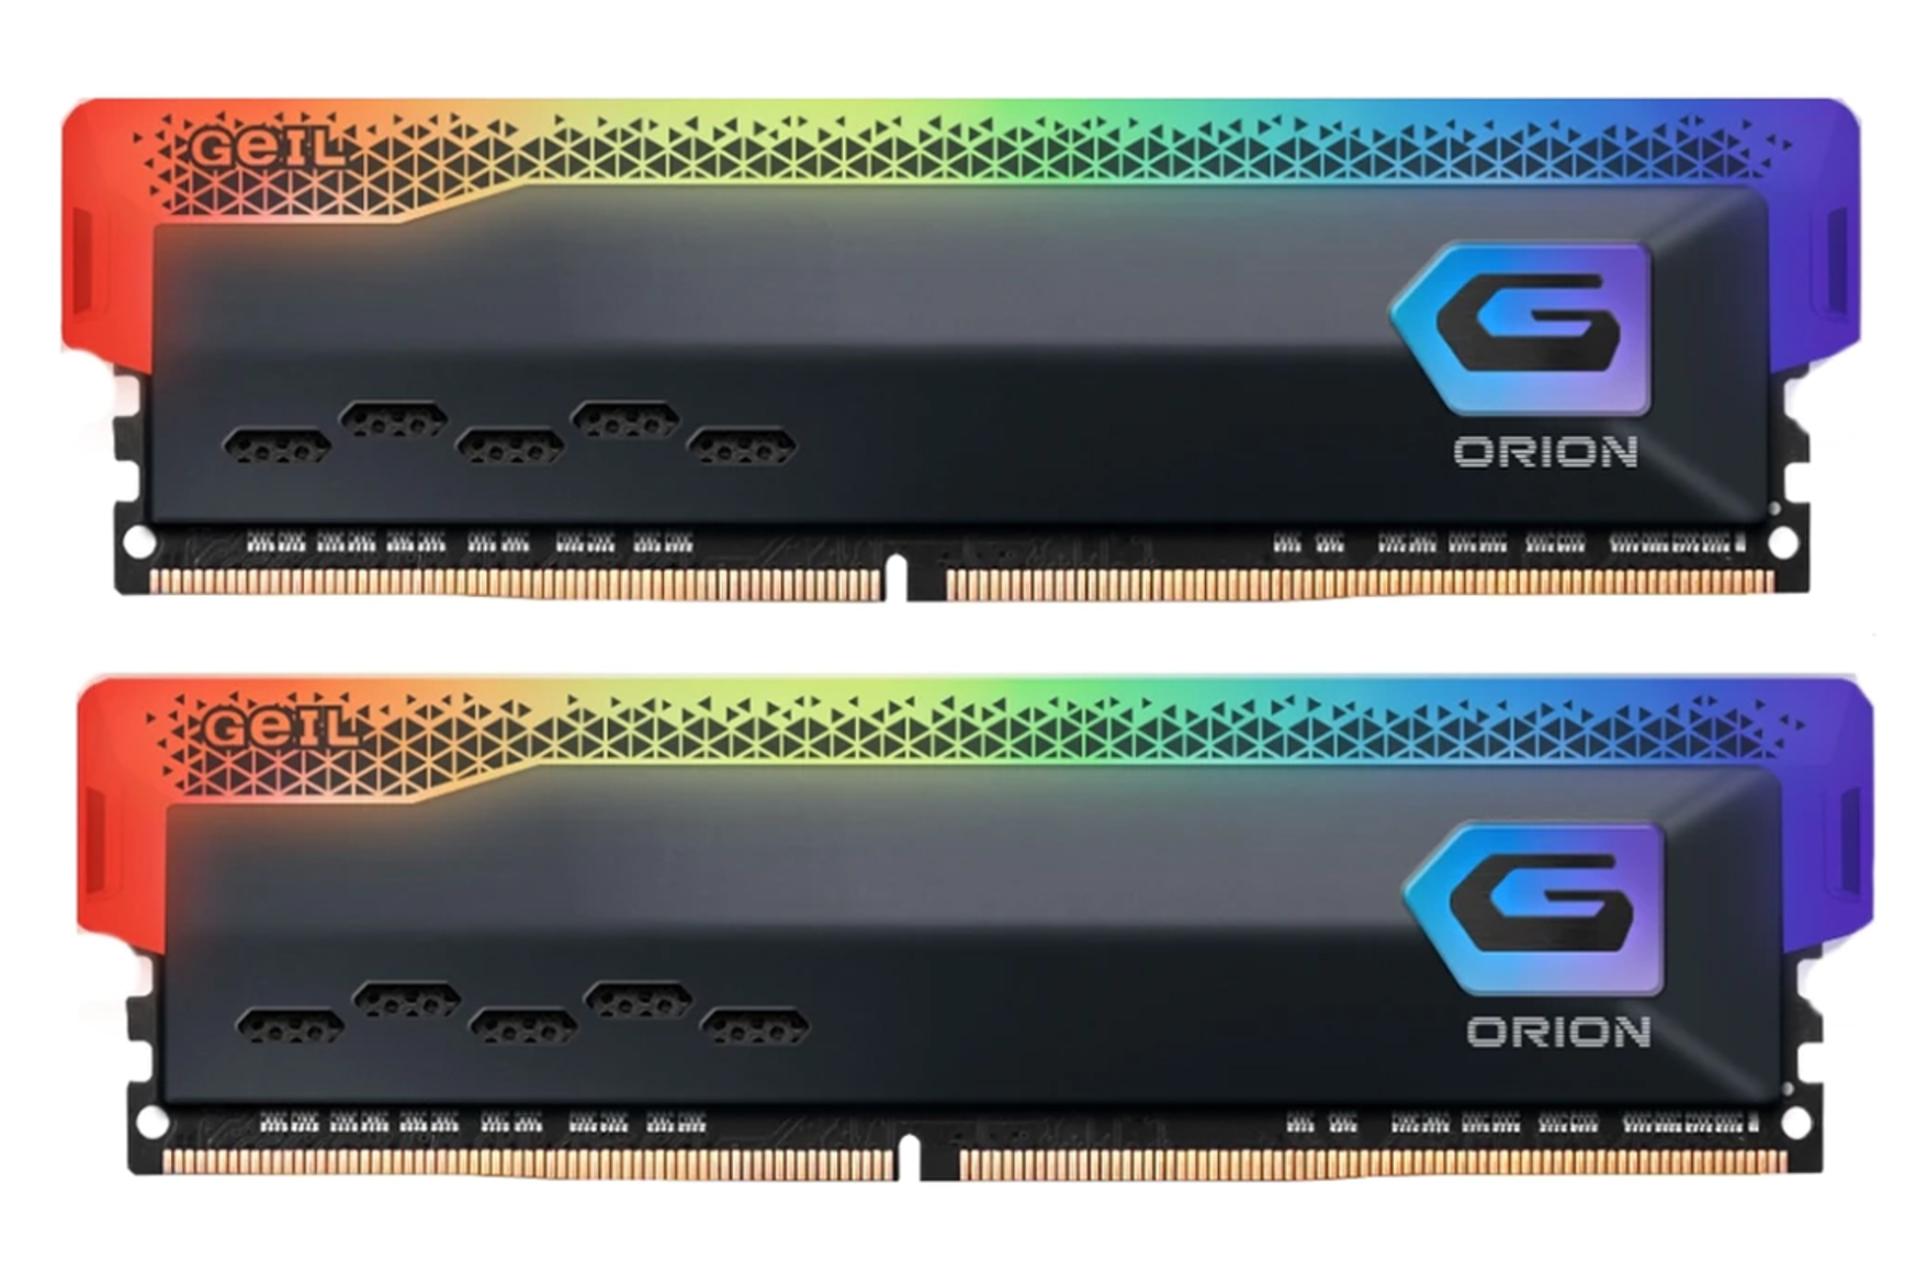 نمای جلو رم گیل ORION RGB ظرفیت 32 گیگابایت (2x16) از نوع DDR4-3200